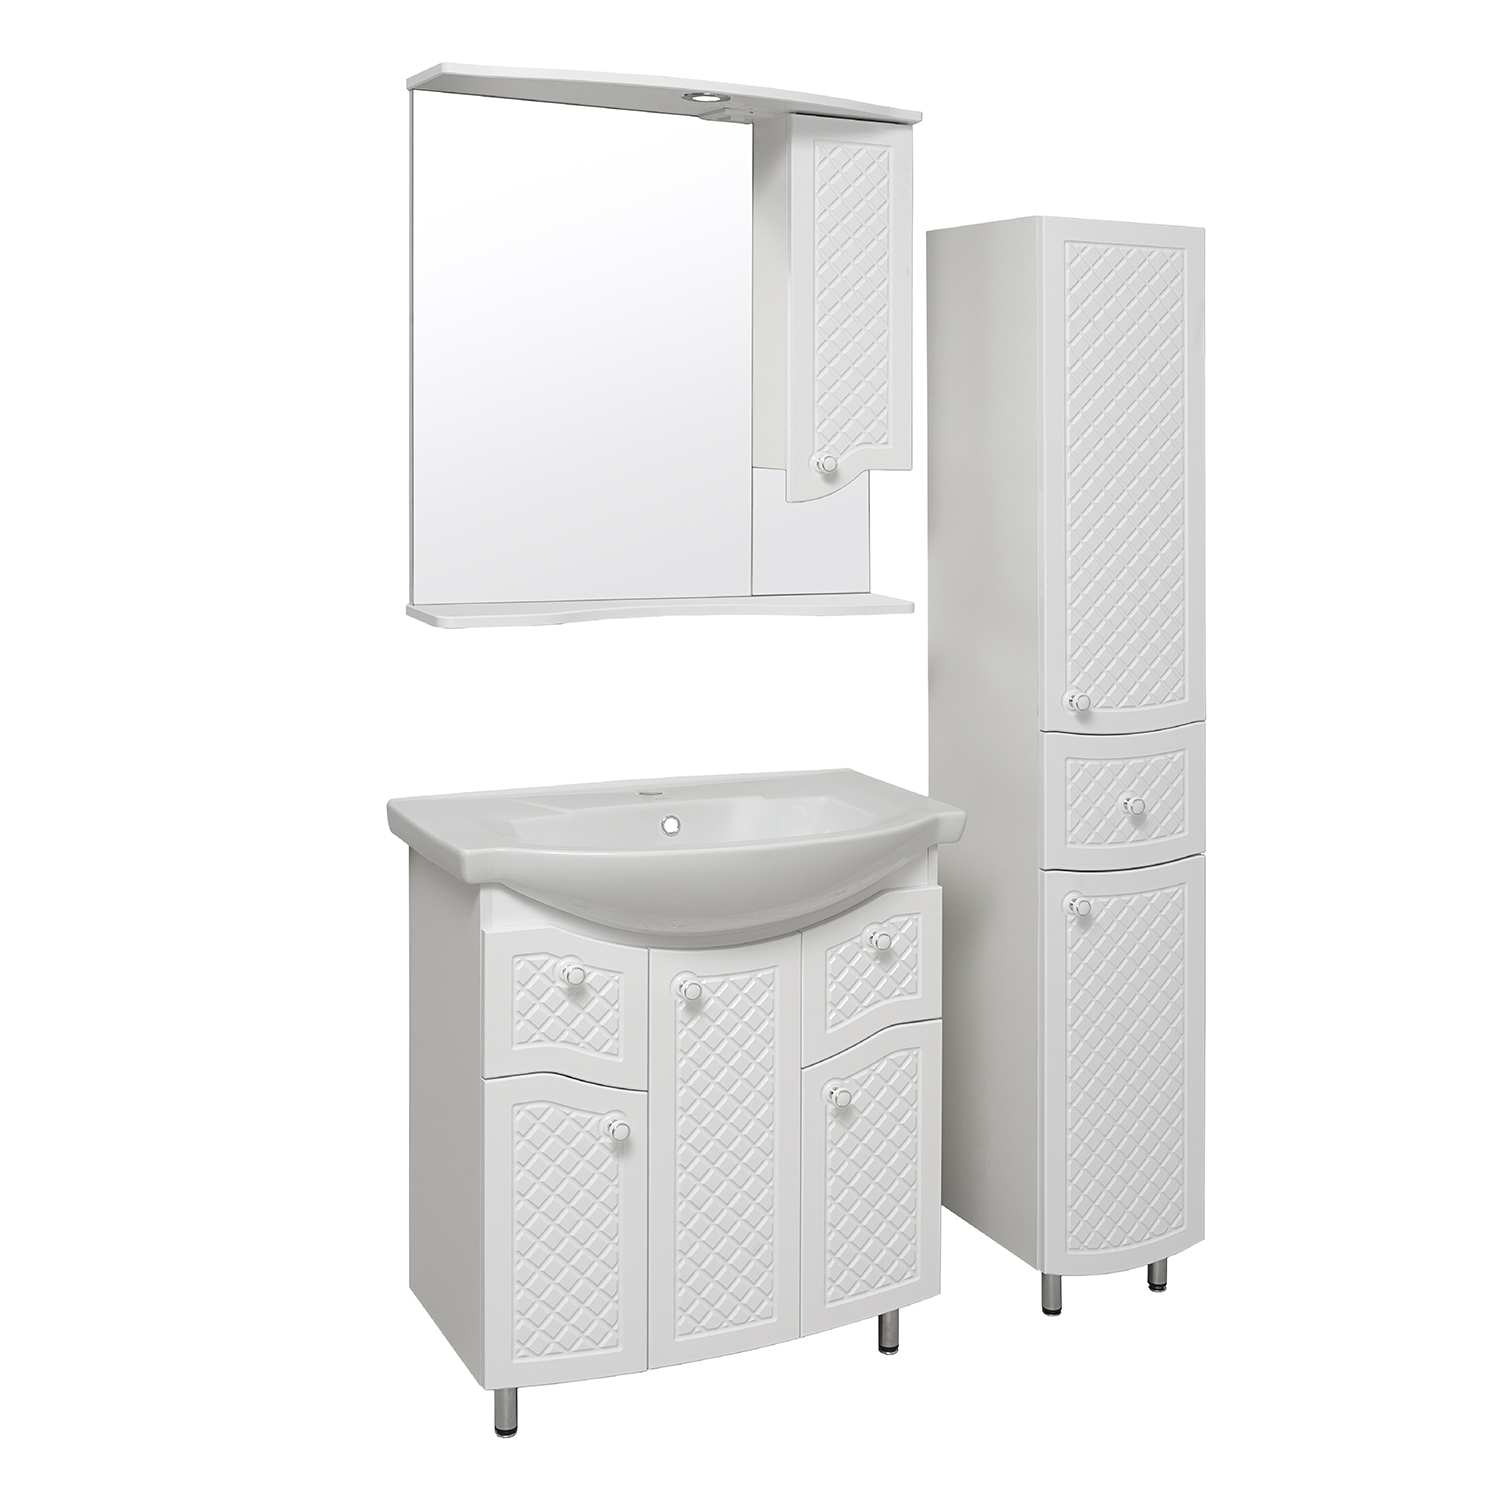 Мебель для ванной комнаты Runo Милано 76 см напольная, белая, цвет белый УТ000002088 - фото 2